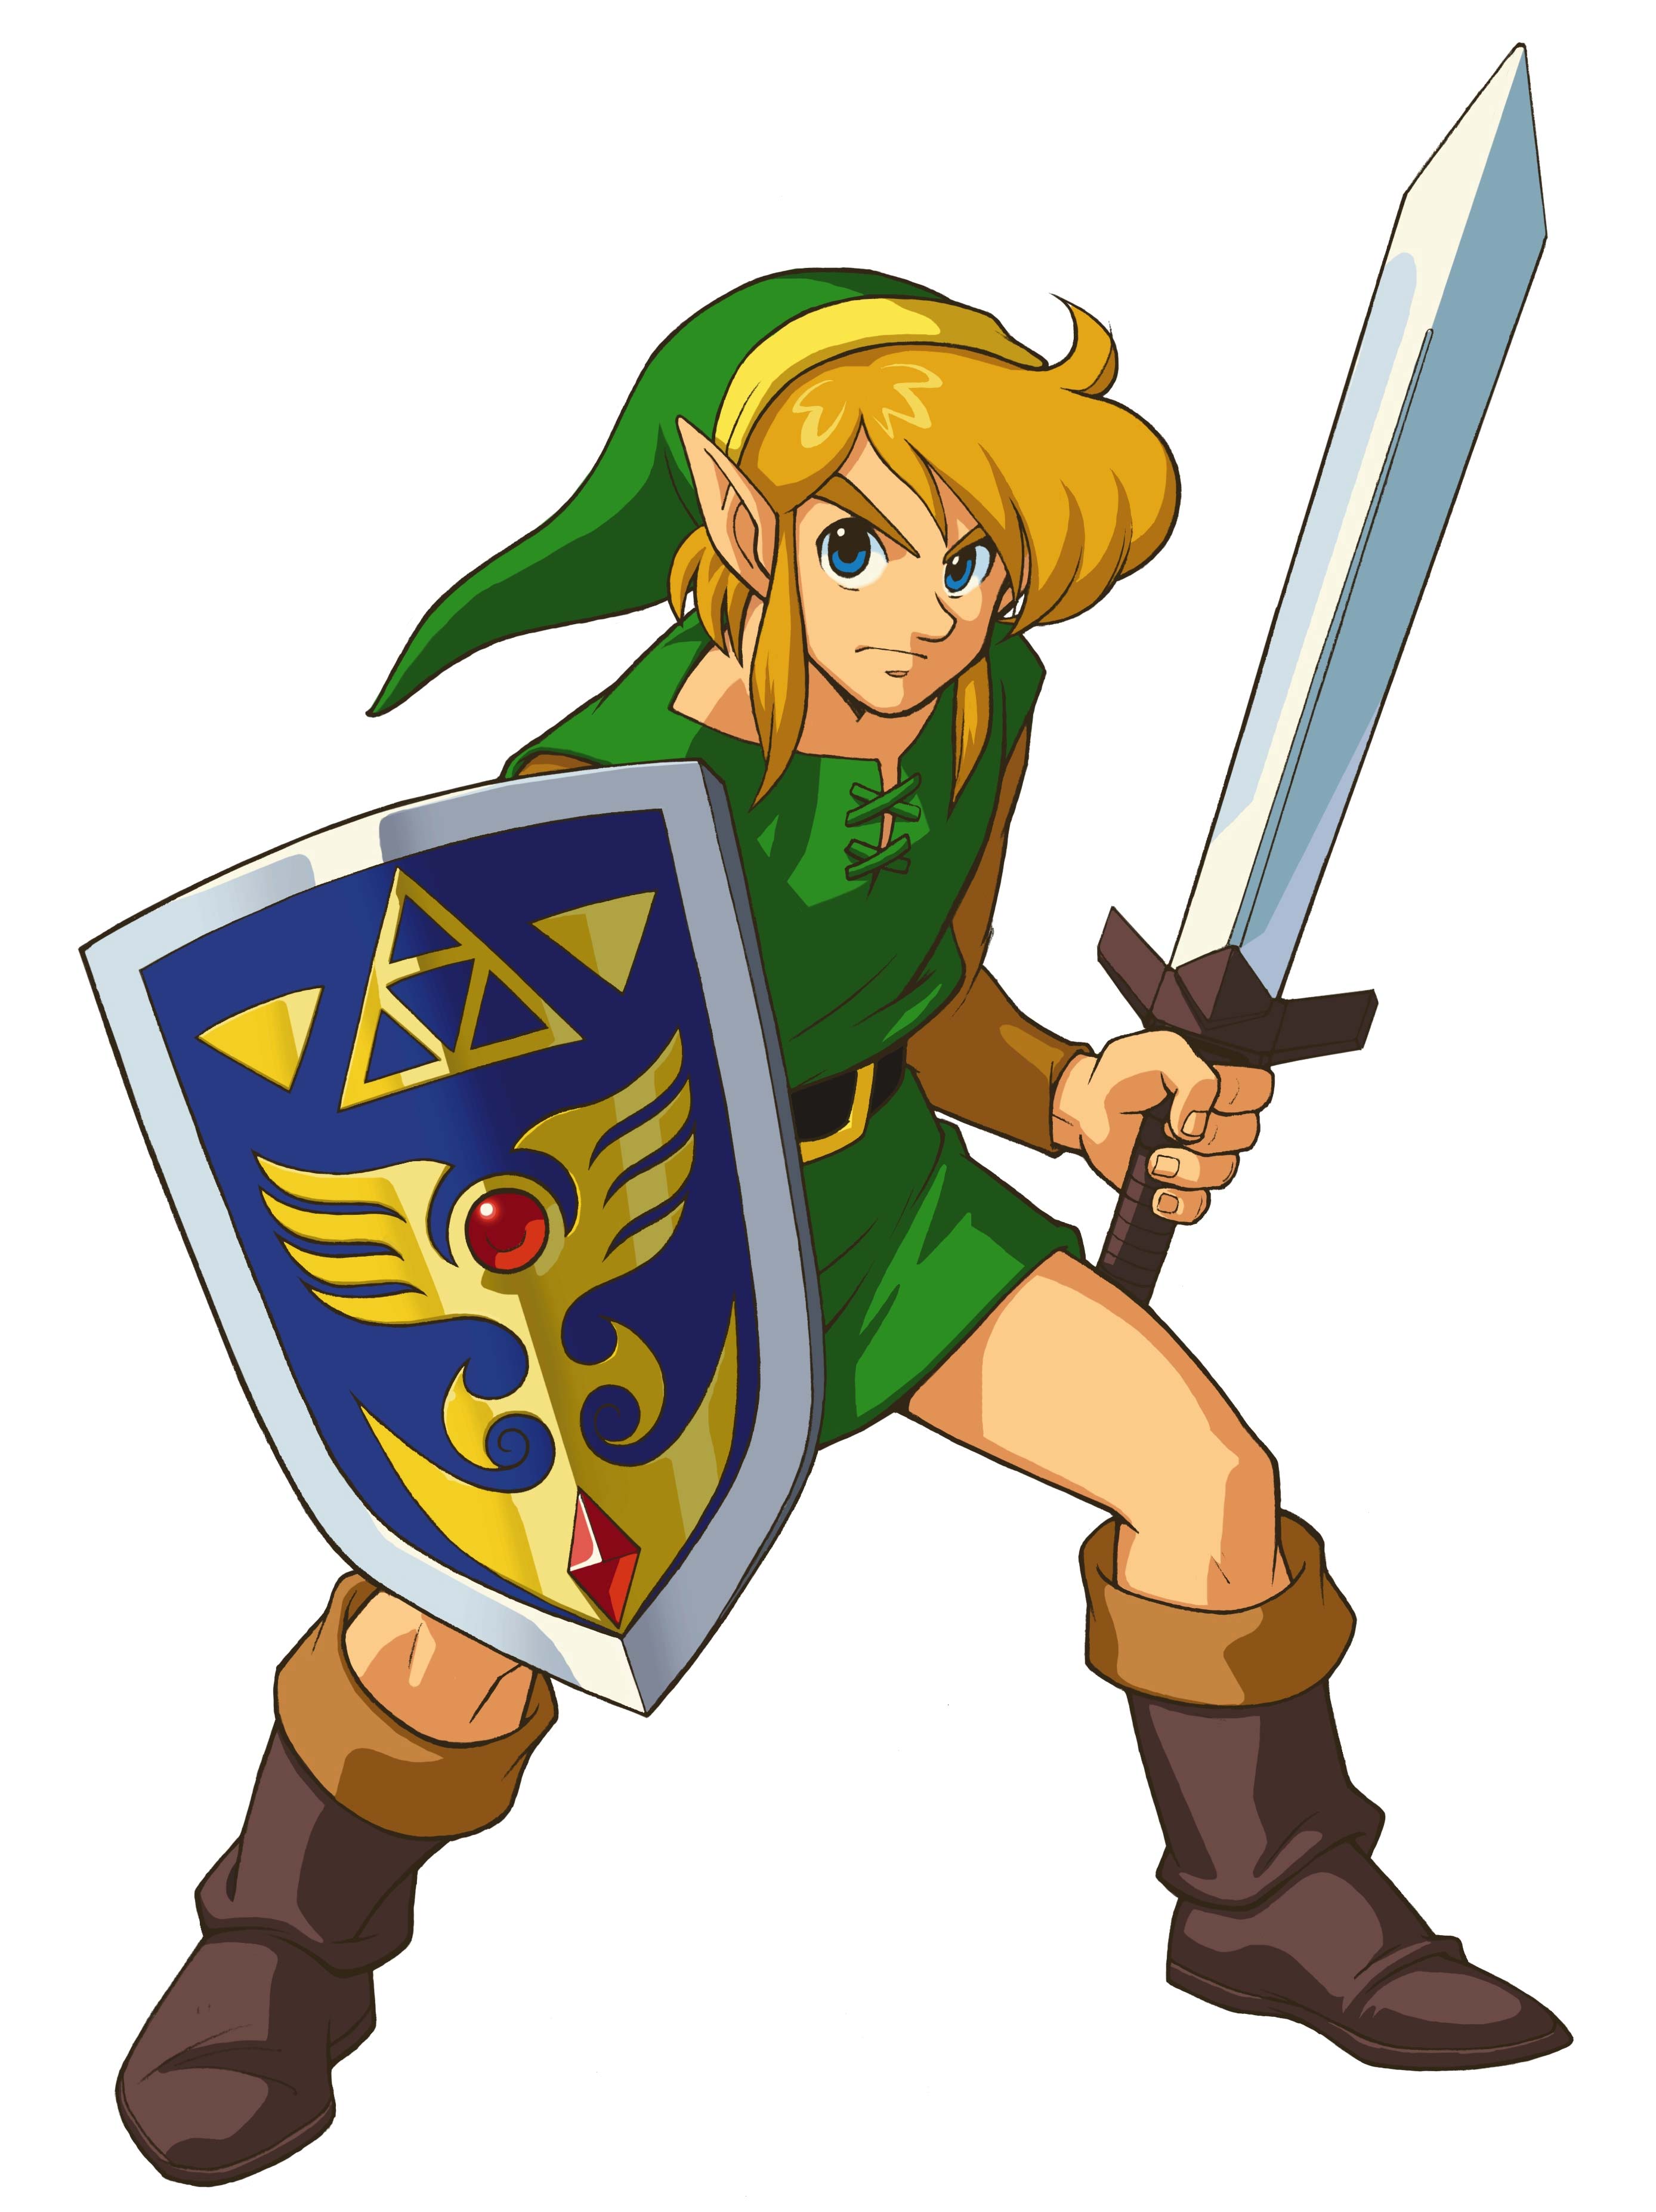 Ilustraciones y artwork de 'The Legend of Zelda' .